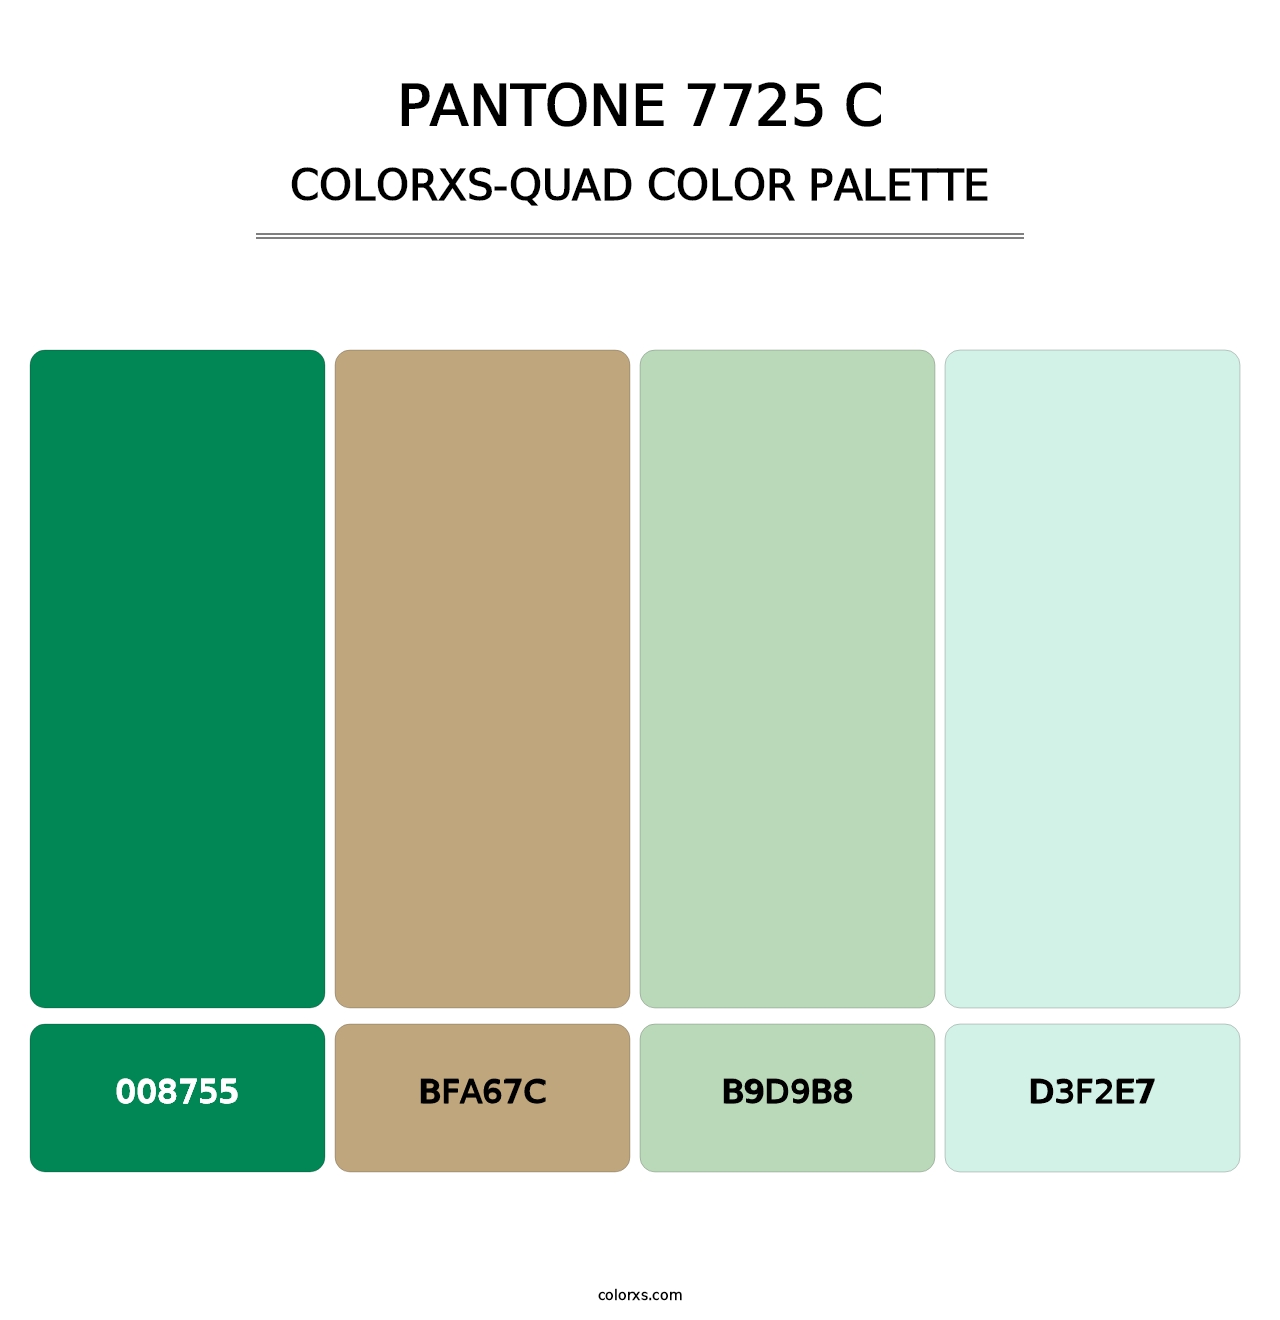 PANTONE 7725 C - Colorxs Quad Palette